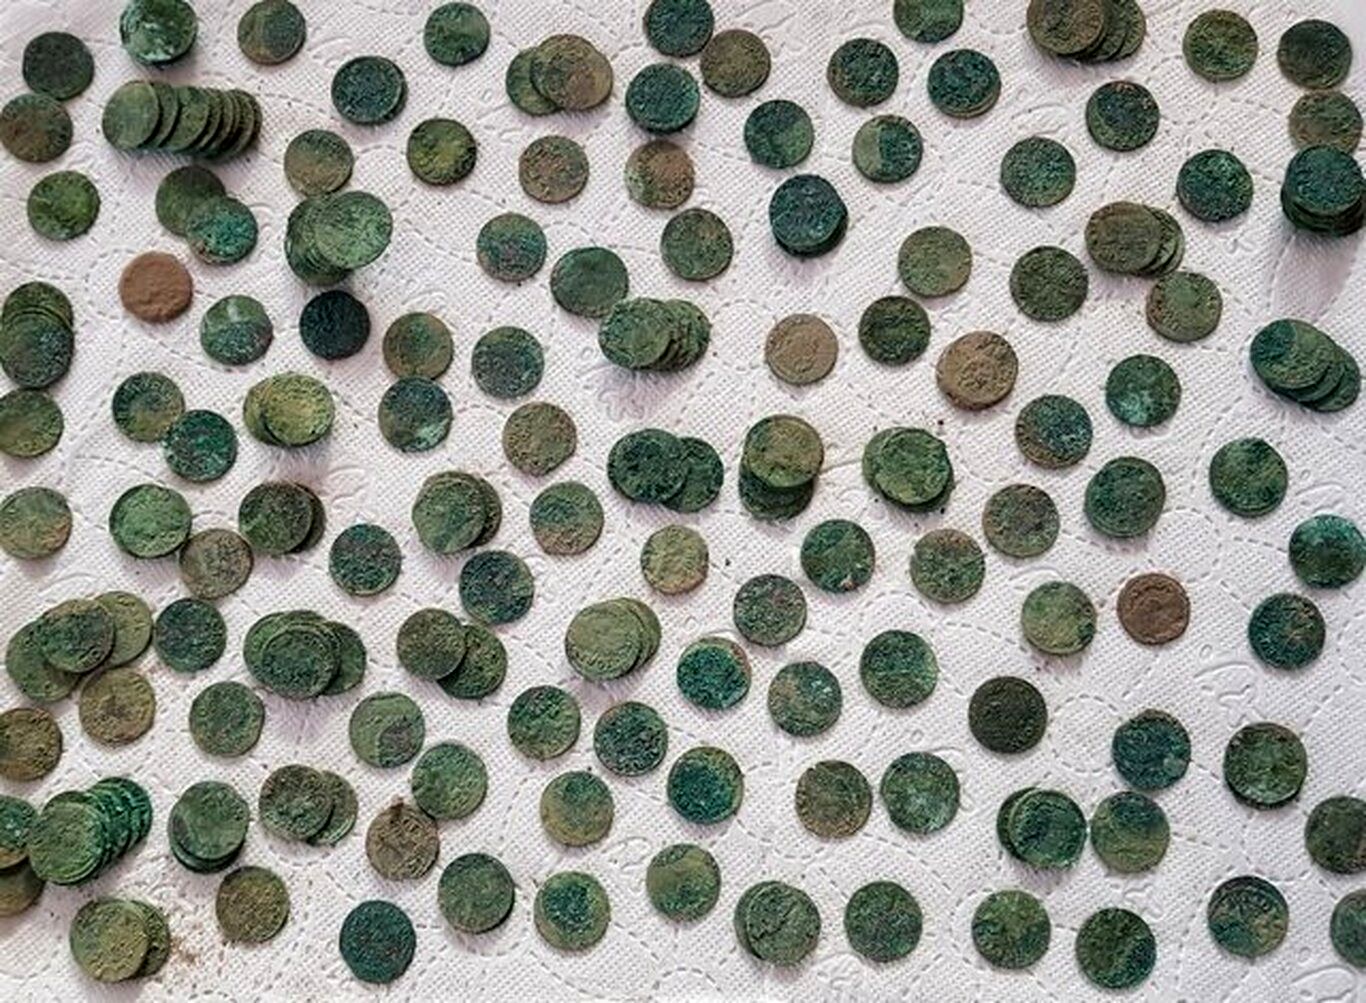 (عکس) جزئیات کشف اتفاقی ۱۰۰۰ سکه در یک مزرعه در لهستان